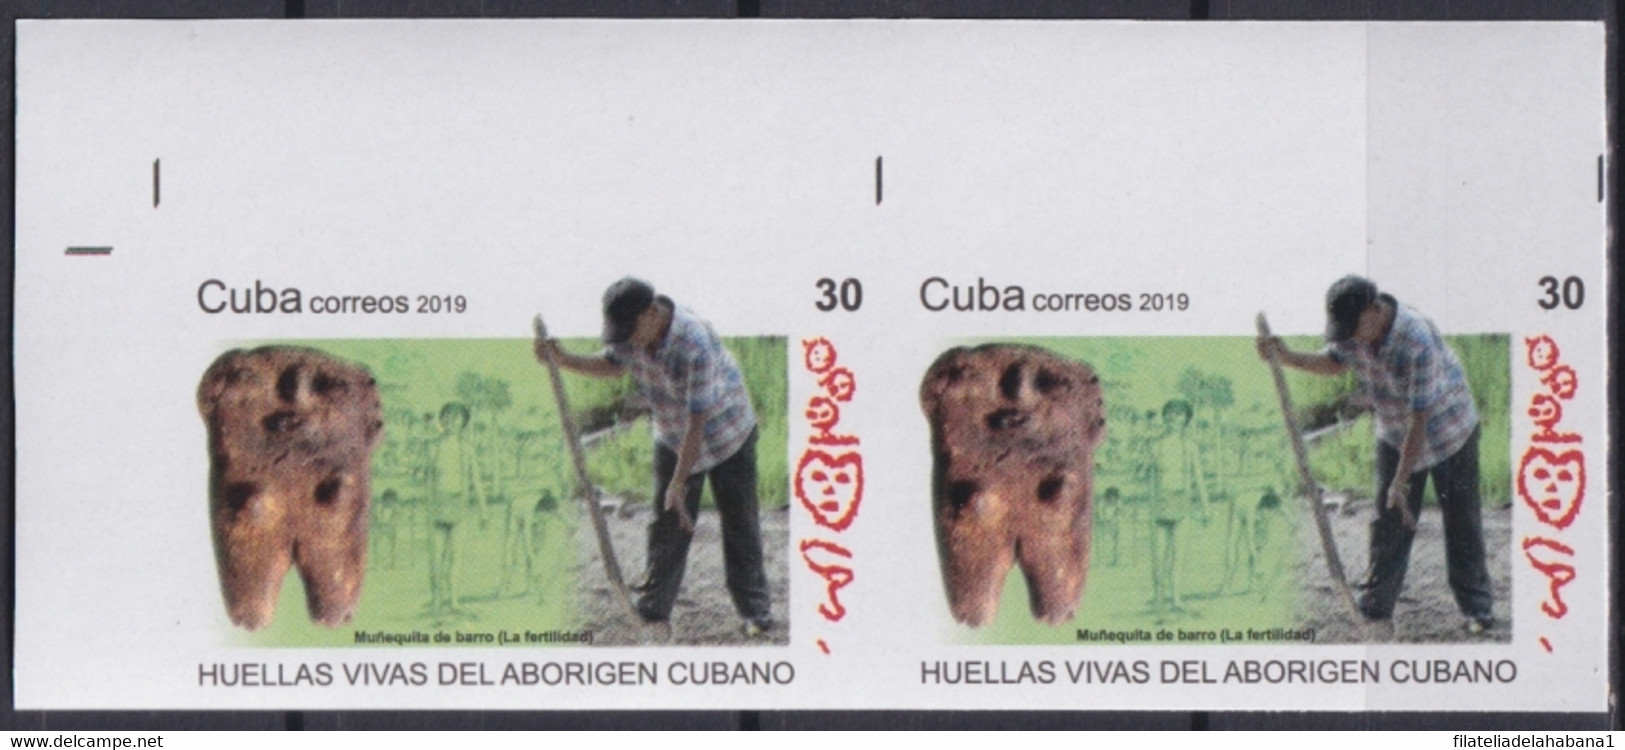 2019.222 CUBA MNH 2019 IMPERFORATED PROOF 30c INDIAN ARCHEOLOGY HUELLAS ABORIGEN. - Sin Dentar, Pruebas De Impresión Y Variedades